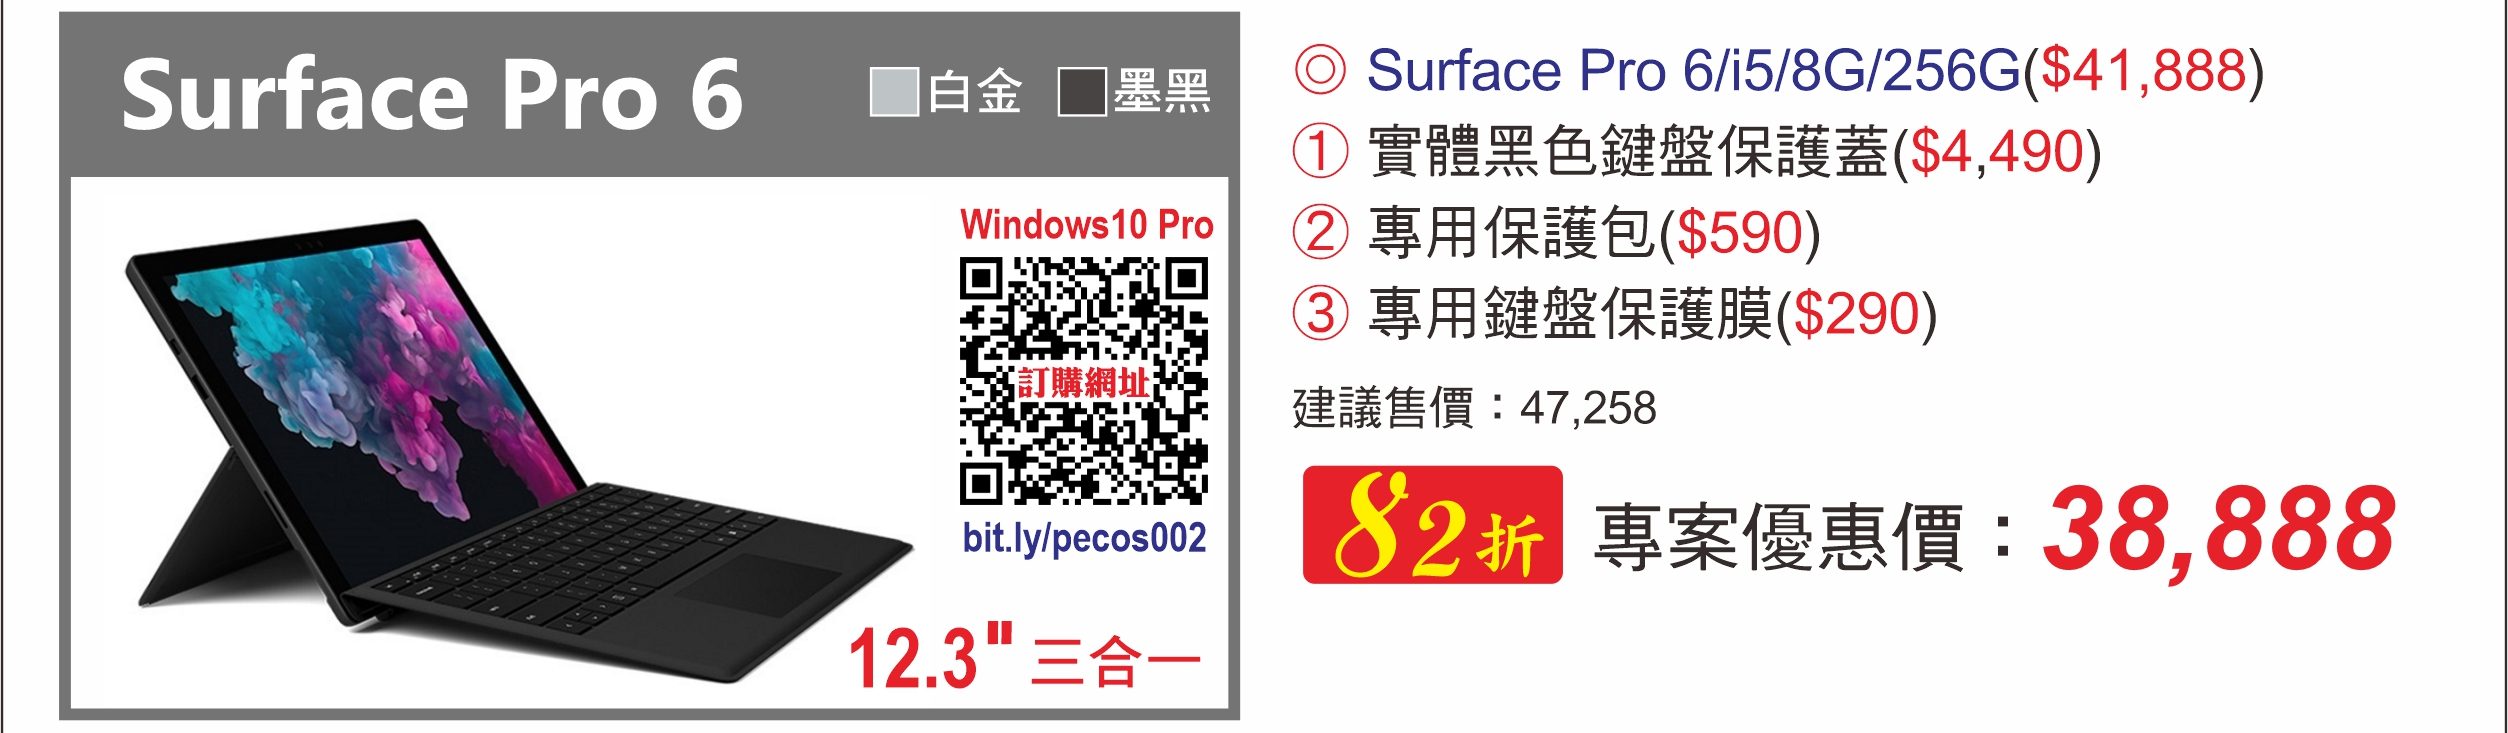 Surface Pro 6 i5/8G/256G 白金|墨黑 (統一員購)